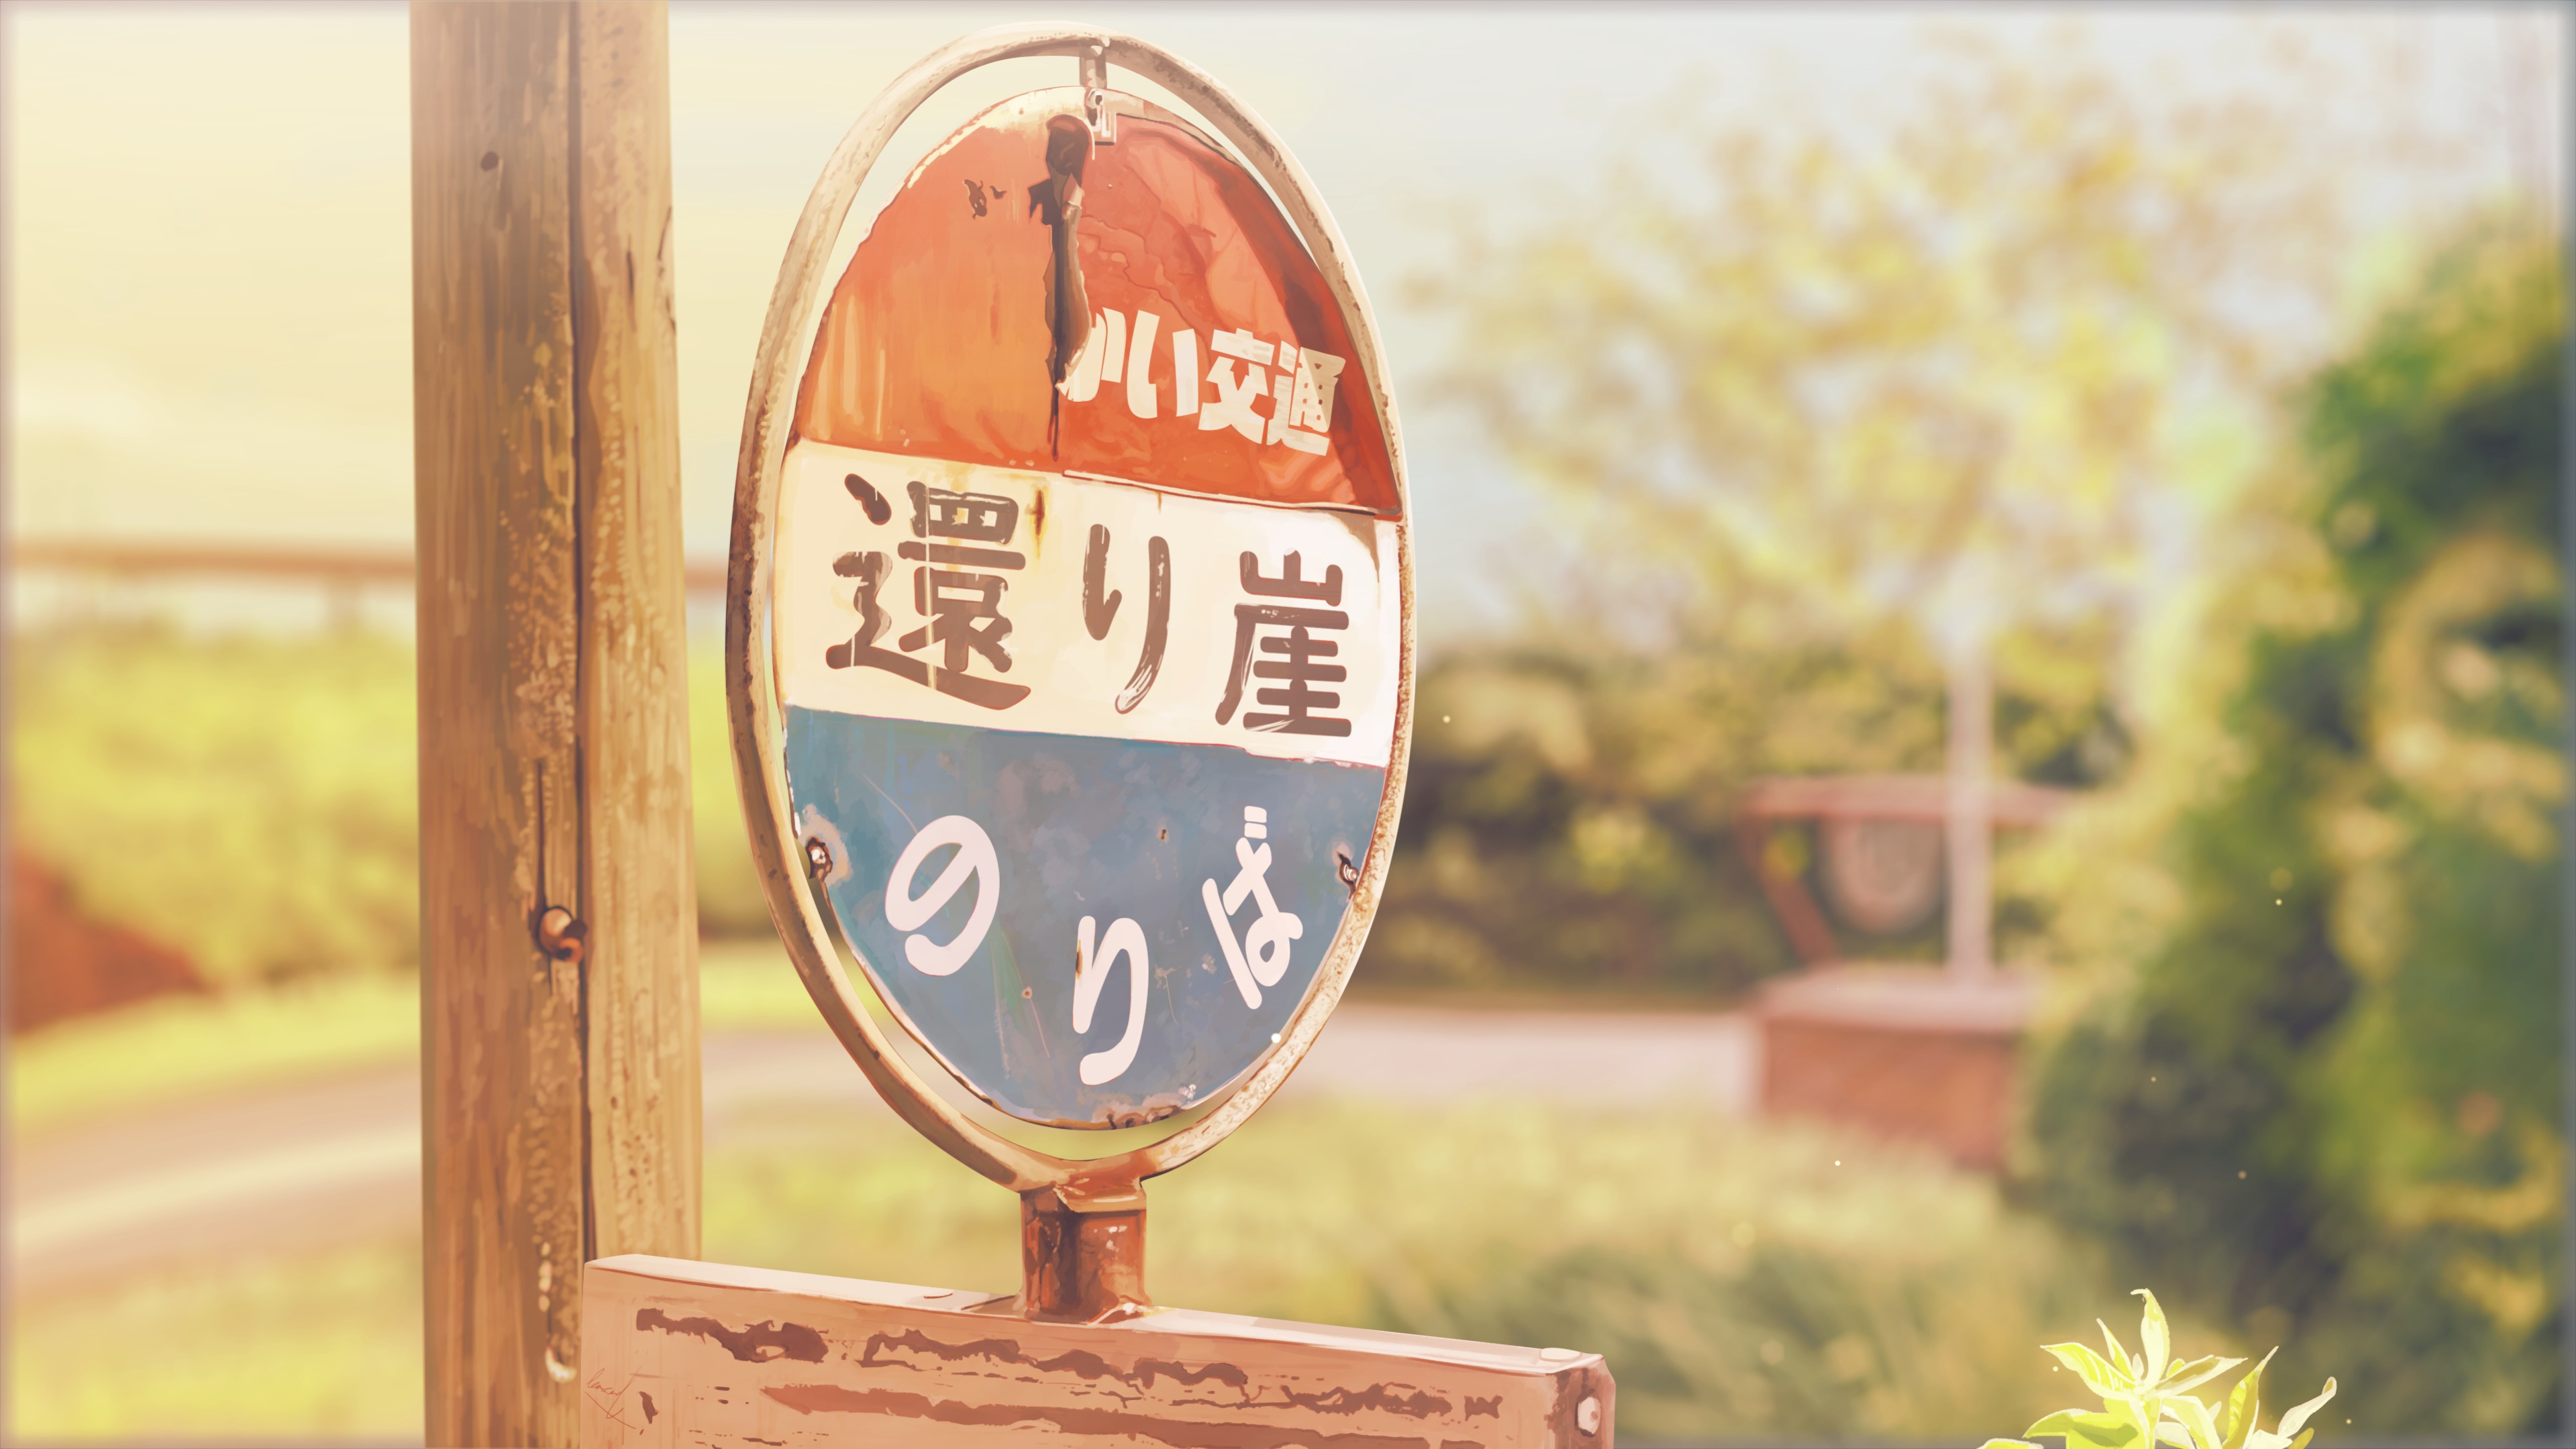 Anime 3839x2160 anime artwork road sign sign post Banishment kanji sunset sunset glow depth of field leaves